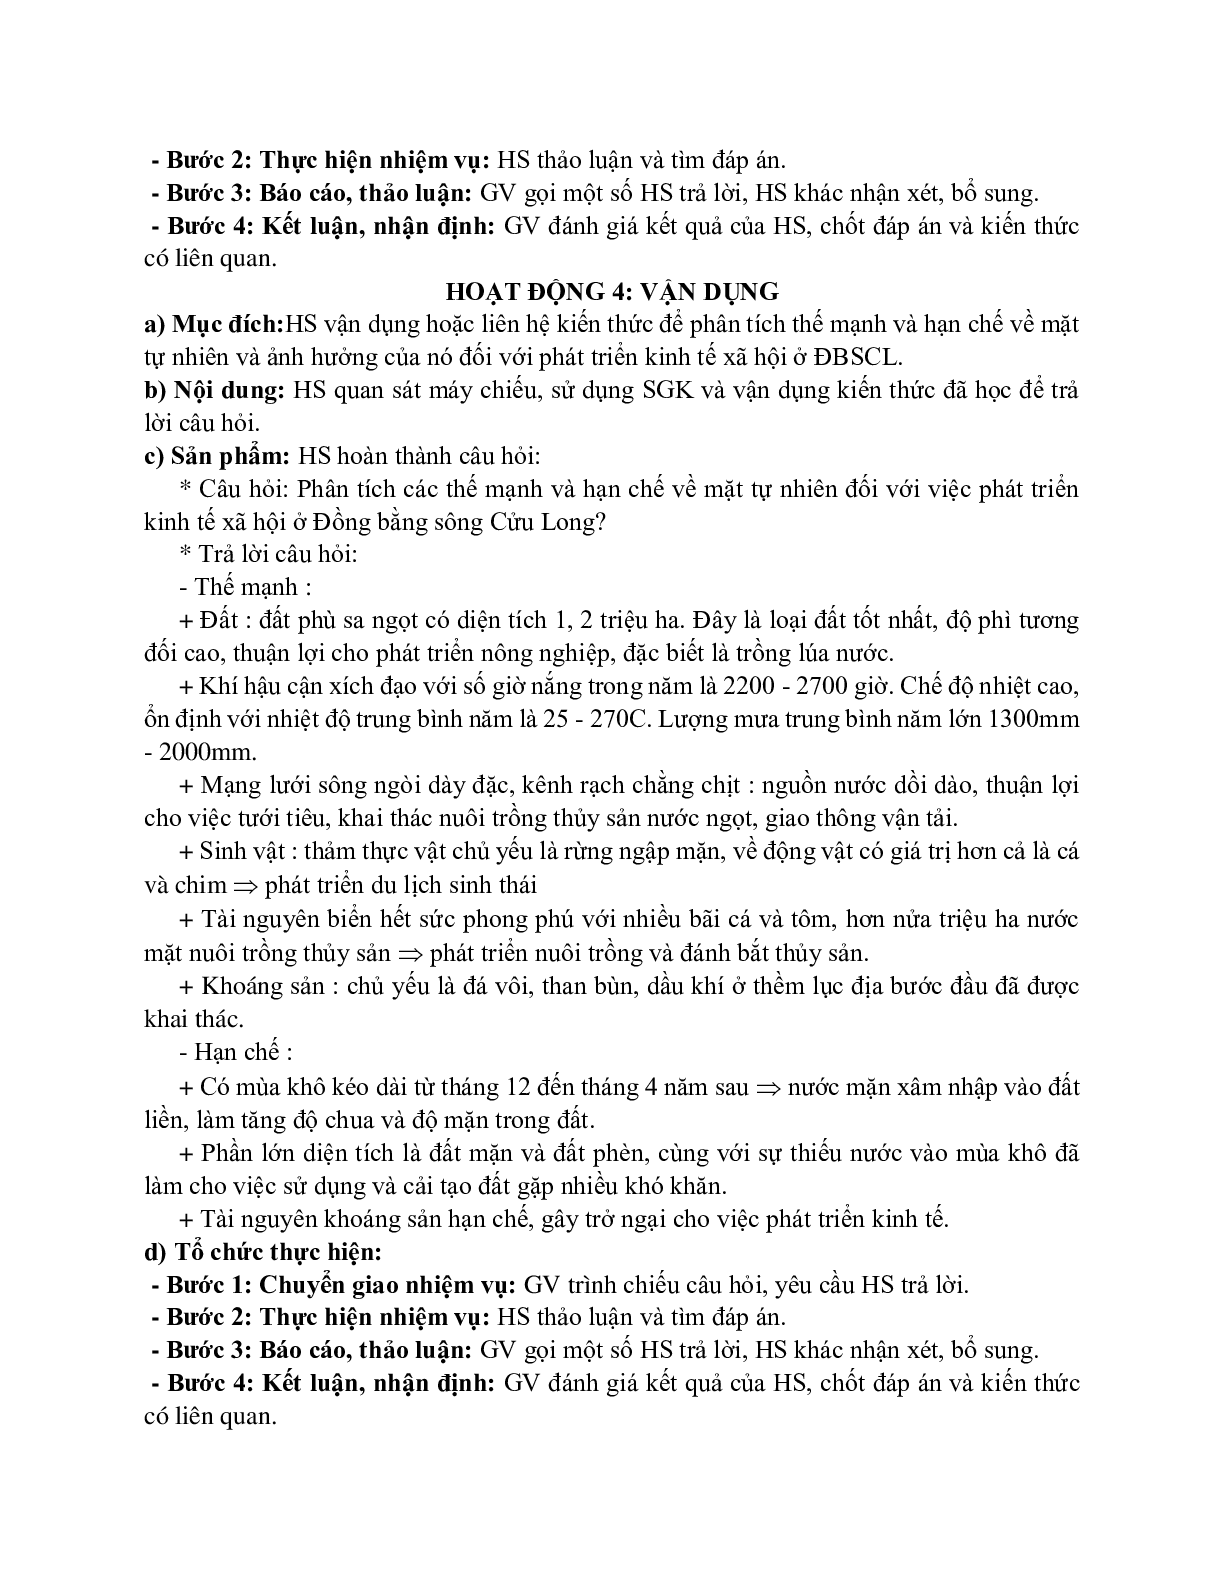 Giáo án Địa lí 12 Bài 41 Vấn đề sử dụng hợp lí và cải tạo tự nhiên ở đồng bằng sông Cửu Long mới nhất (trang 6)